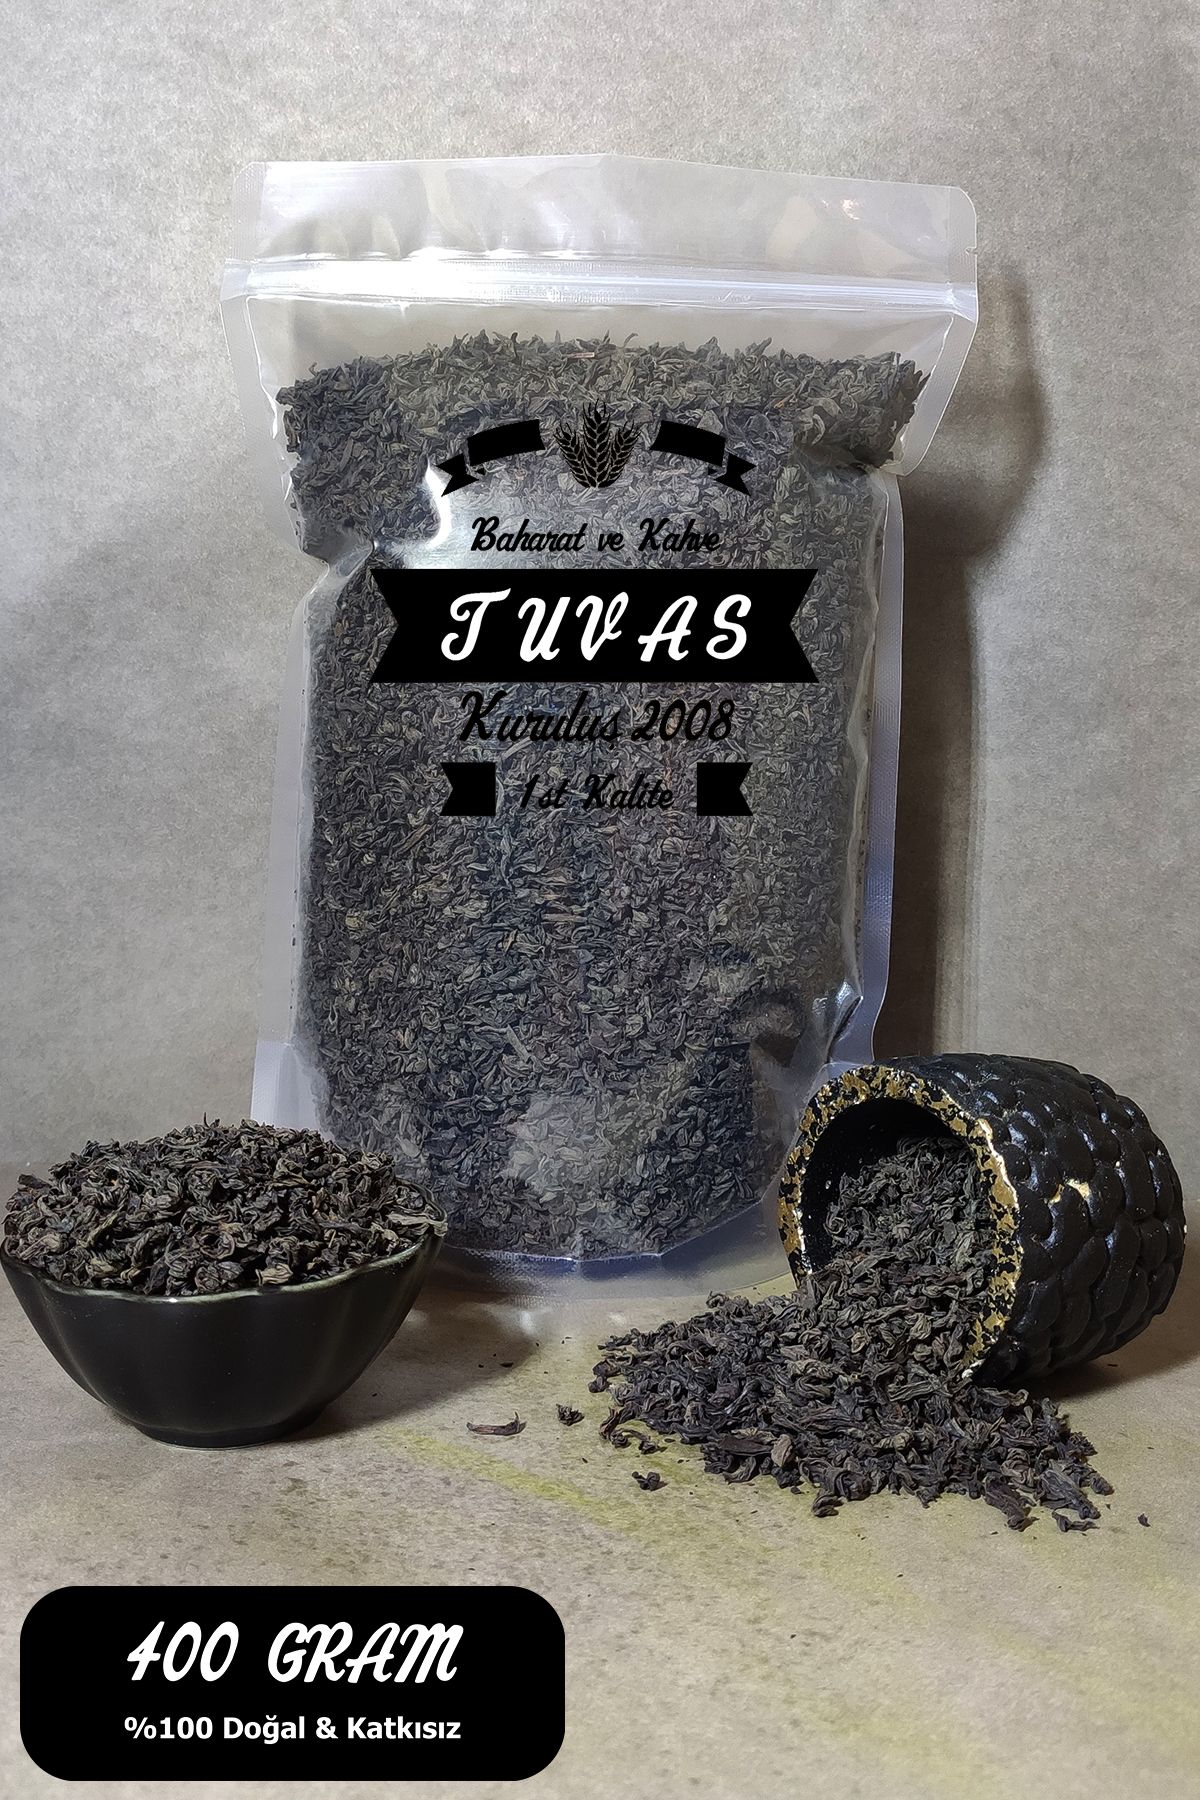 TUVAS BAHARAT İthal Seylan Sri Lanka Çayı - Siyah Yaprak Kaçak Çay 400 Gram